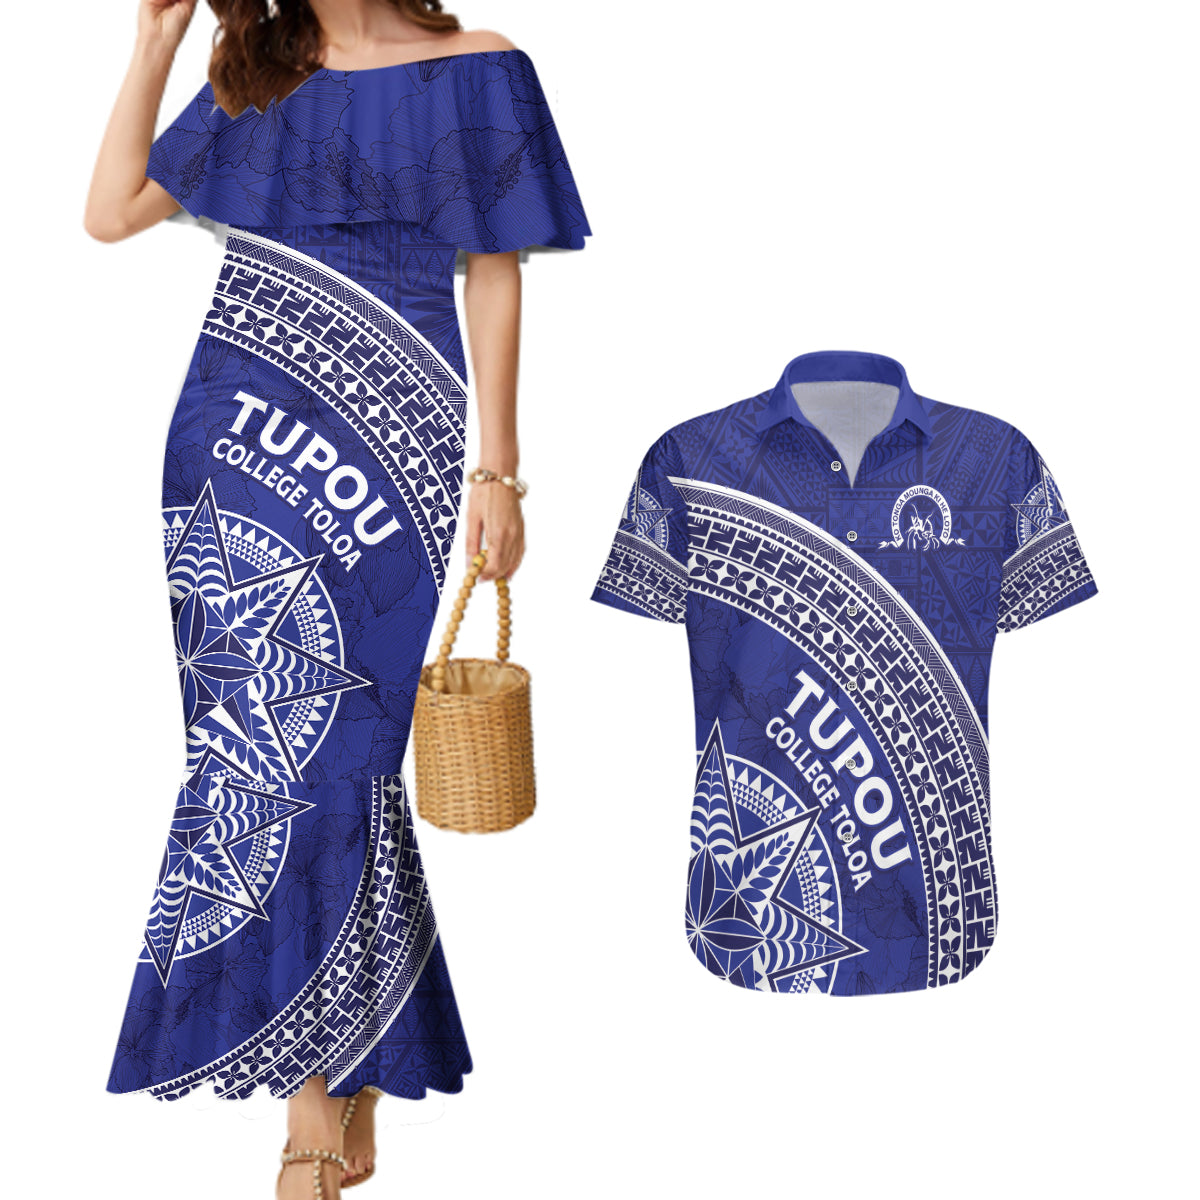 Tupou College Toloa Couples Matching Mermaid Dress and Hawaiian Shirt Ngatu Tapa Mix Style